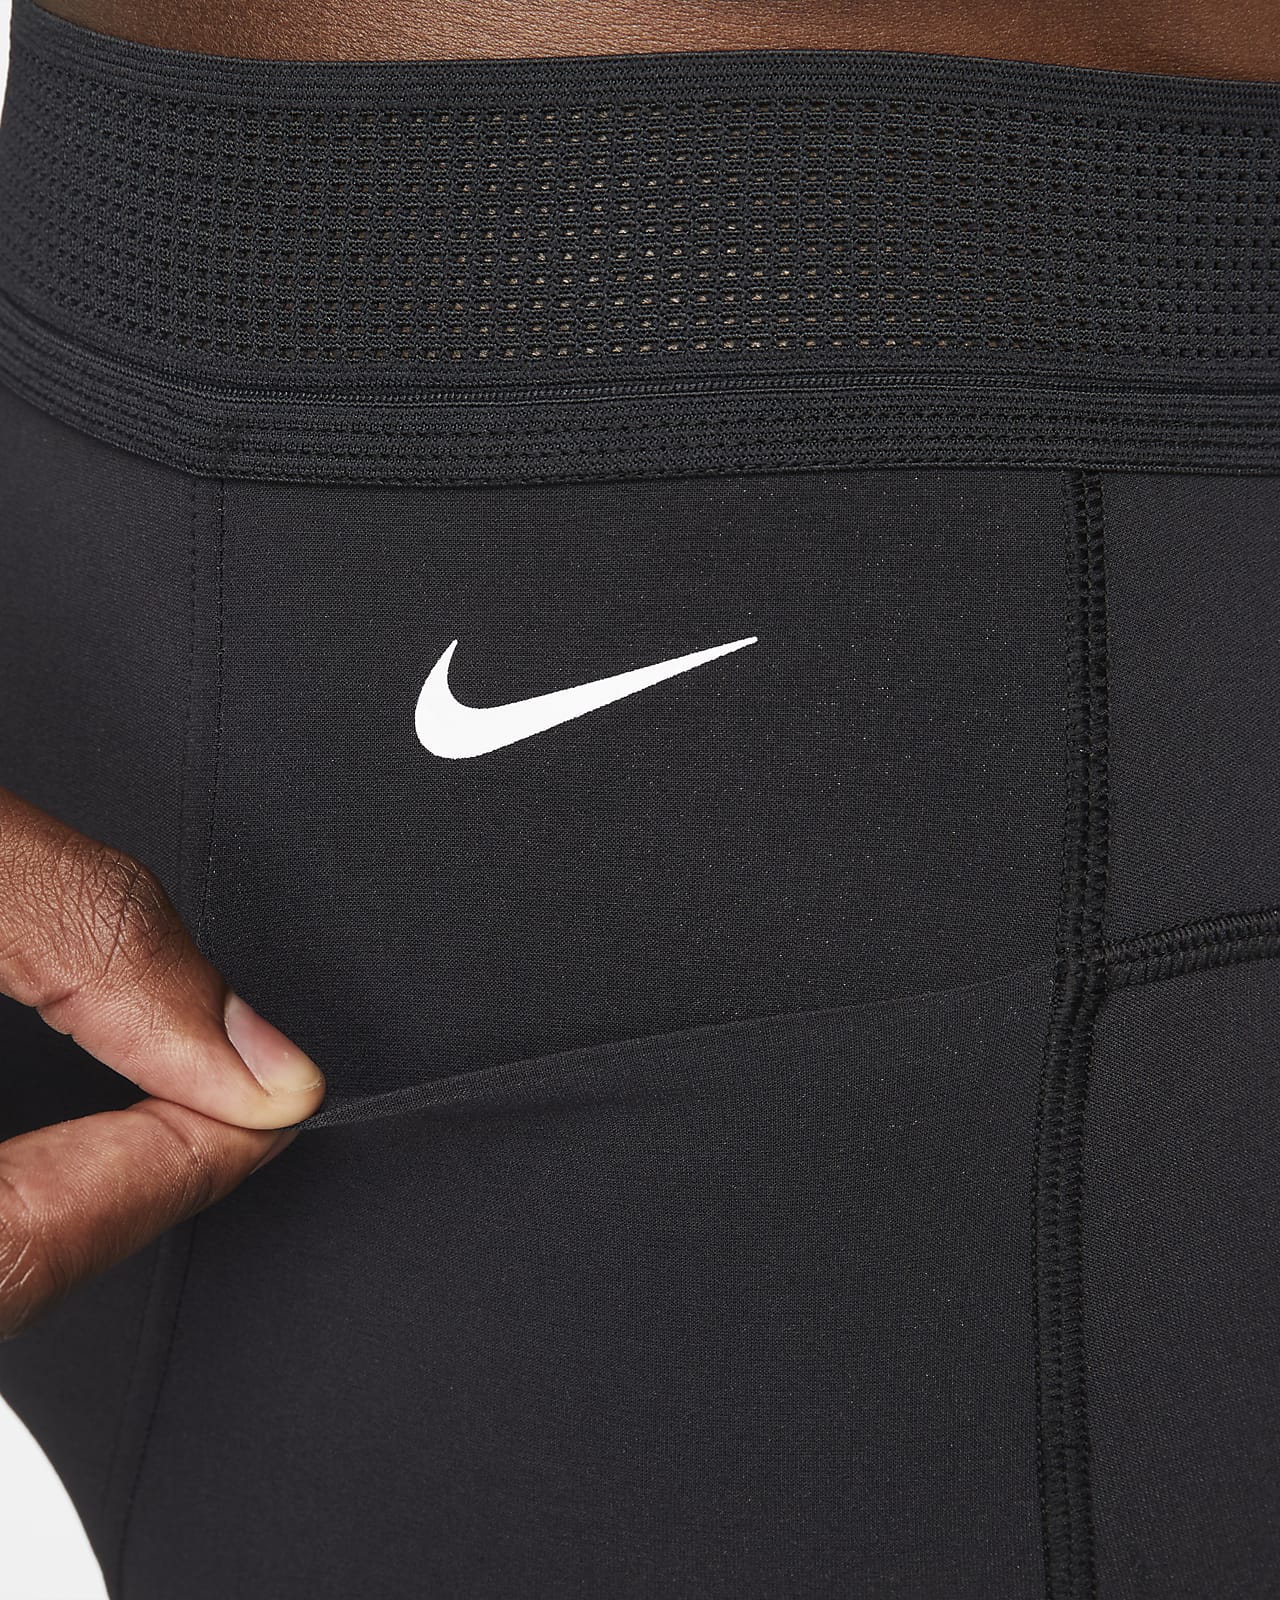 Sportline R. Dominicana - Nike Power Pants 🏃 ⚡ Sigue corriendo con las  mallas Nike Power. La tela elástica y firme permite que te muevas con  libertad en cada pisada, mientras que